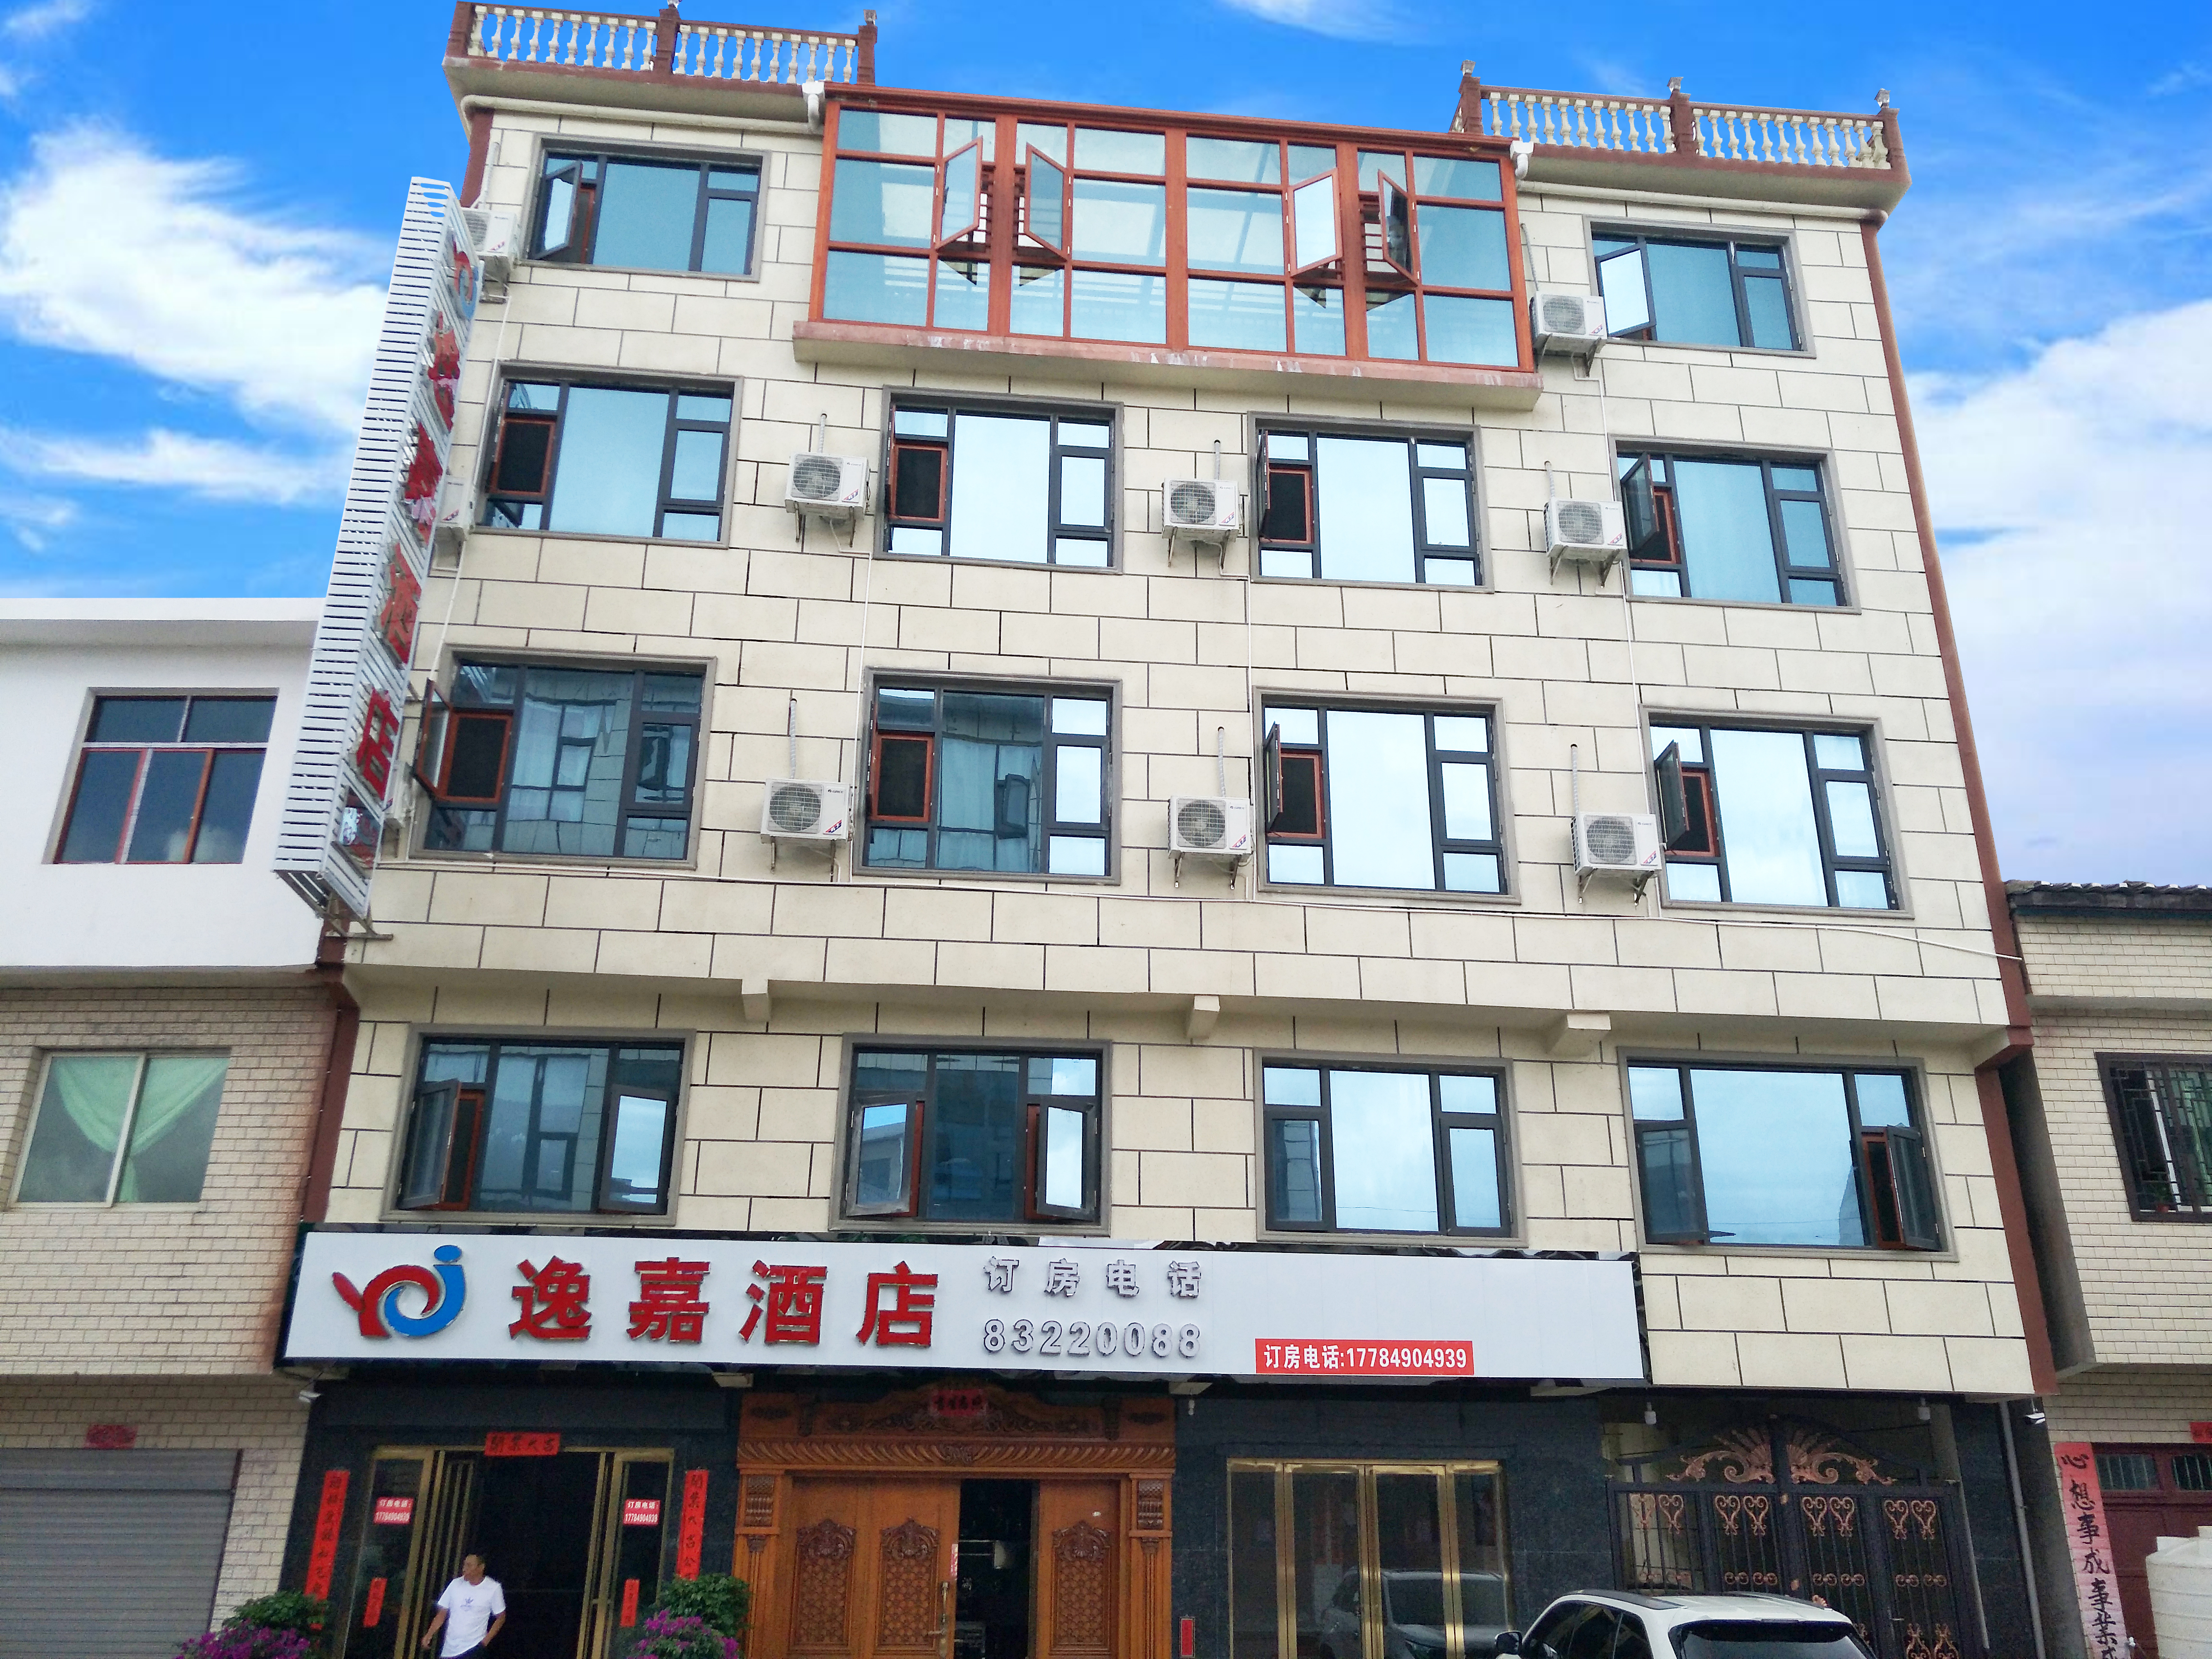 Guiyang Yijia Hotel